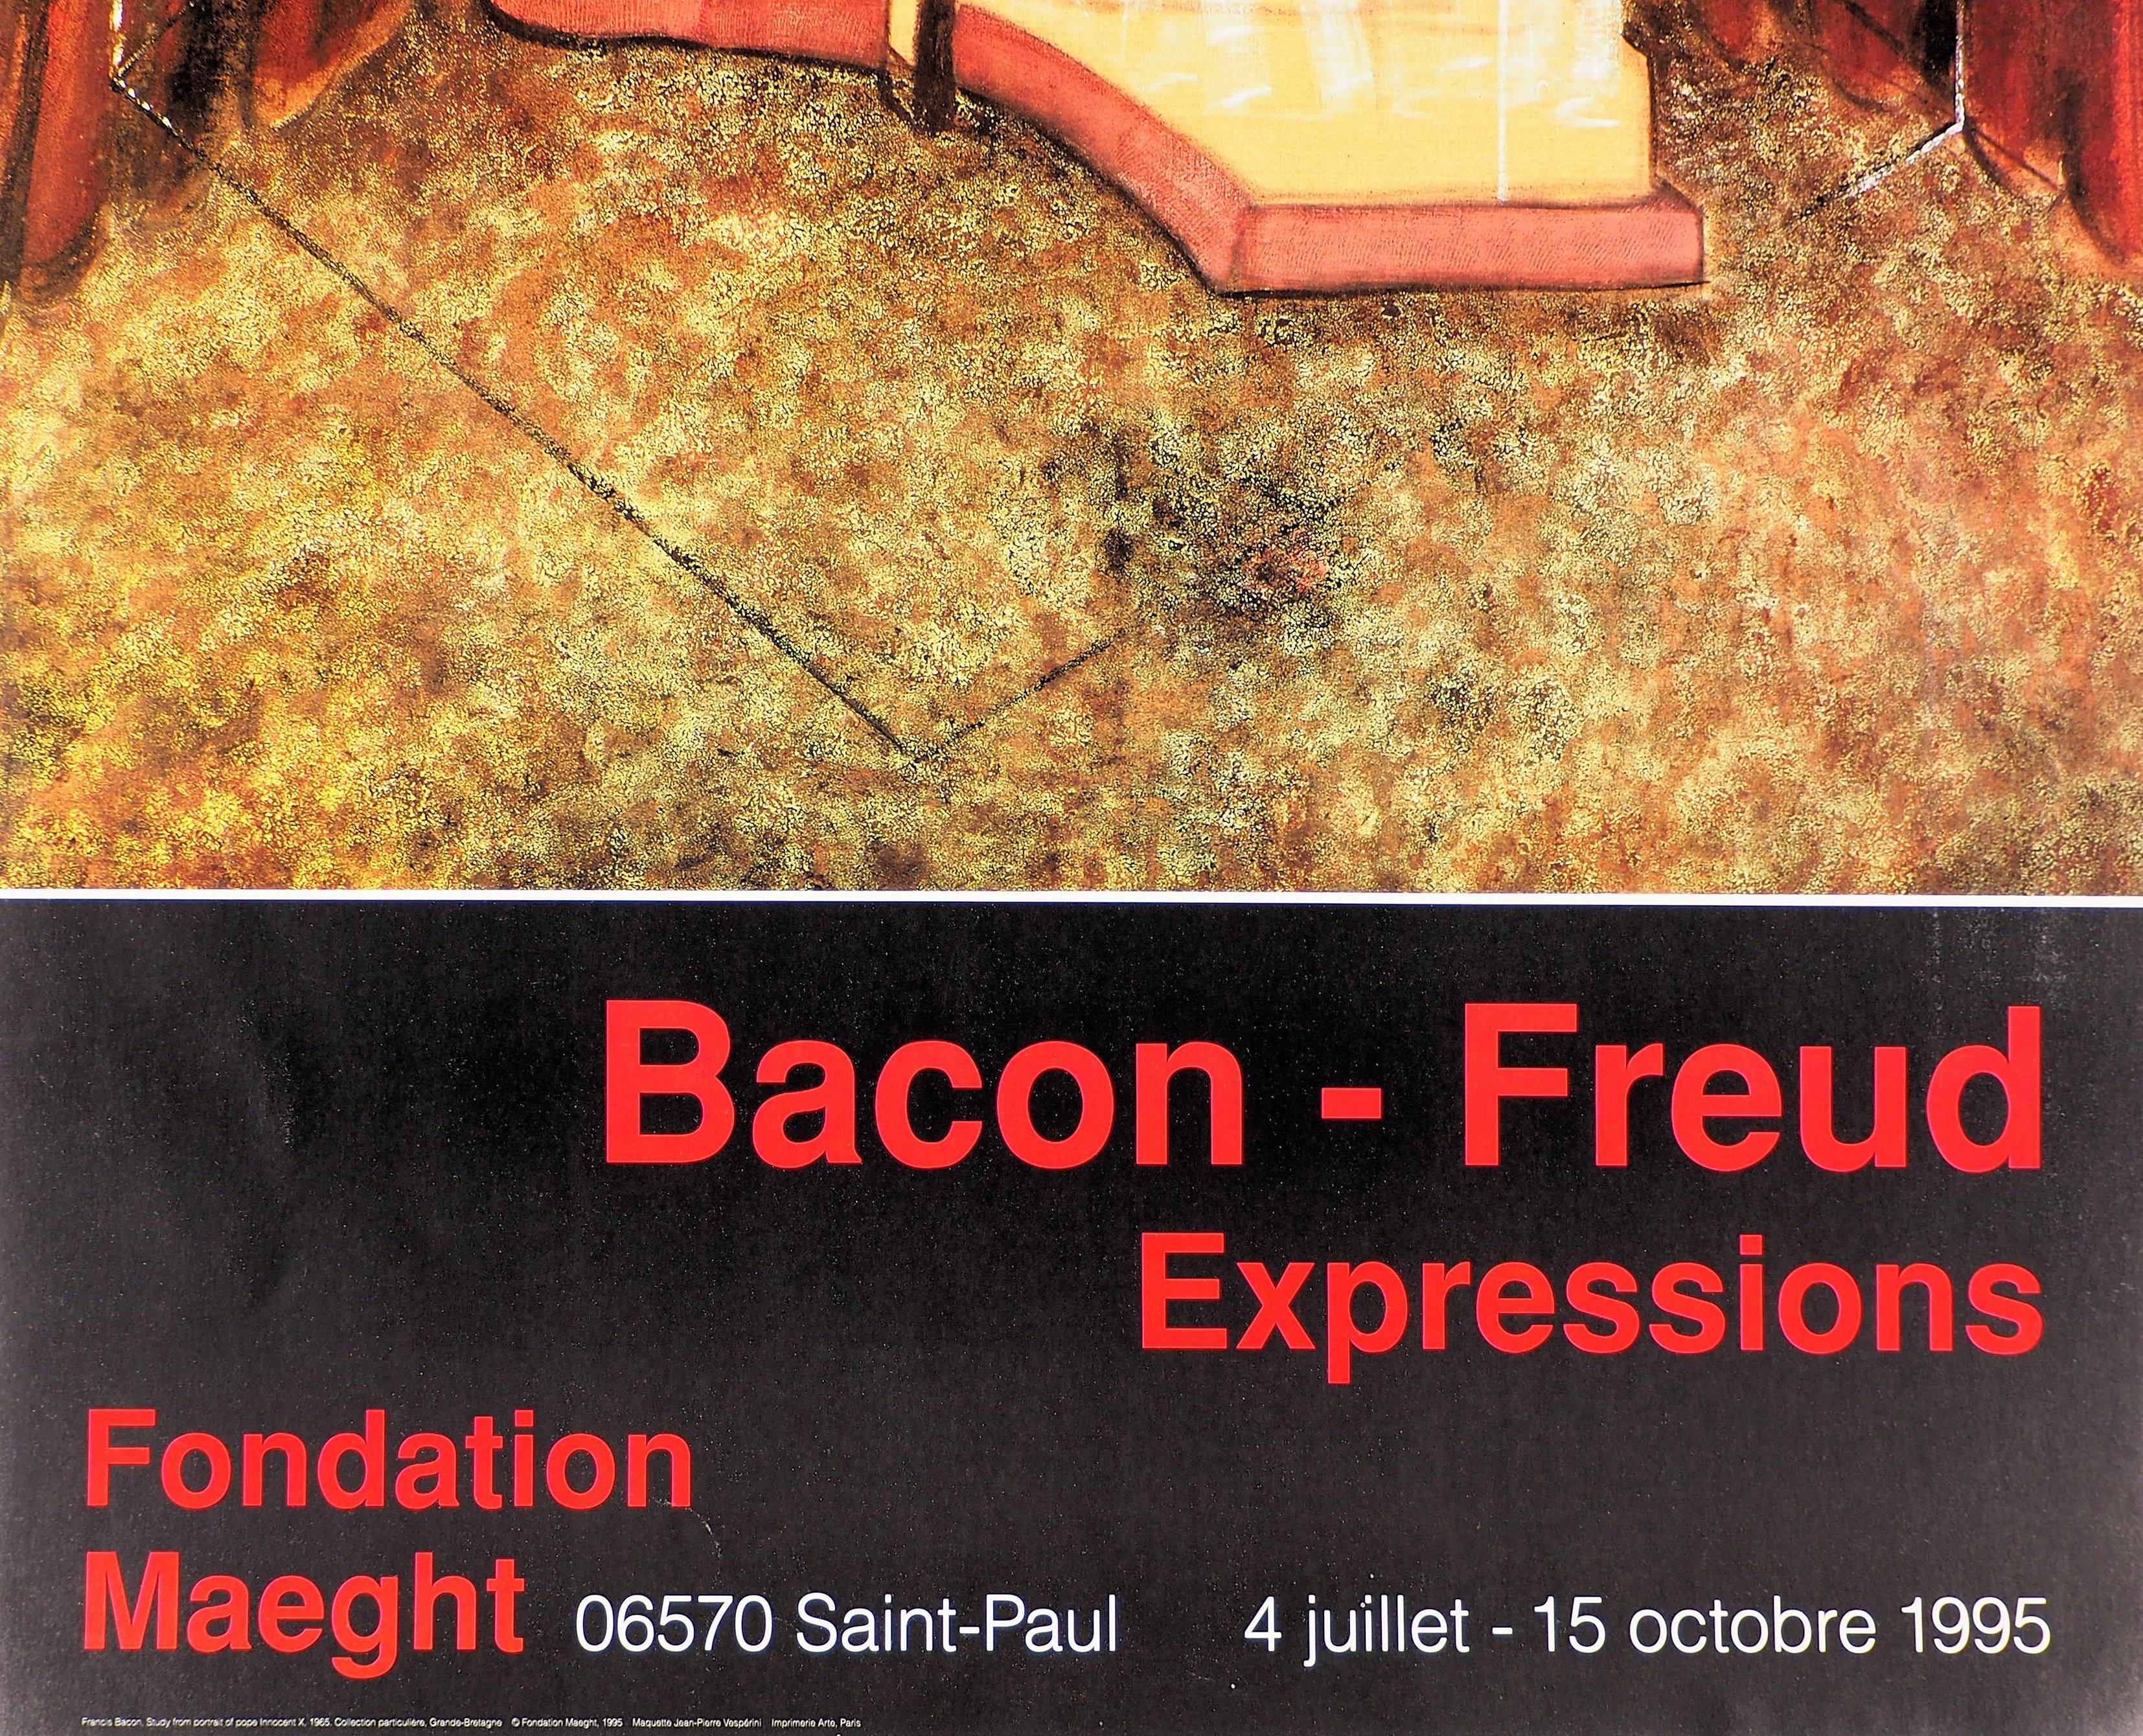 (Nach) Francis Bacon
Der Papst, 1995

Original-Plakat (hohe Qualität im Offsetdruck)
Auf schwerem Papier 86 x 50 cm (ca. 34 x 20 Zoll)
Herausgegeben von Maeght für die Ausstellung 